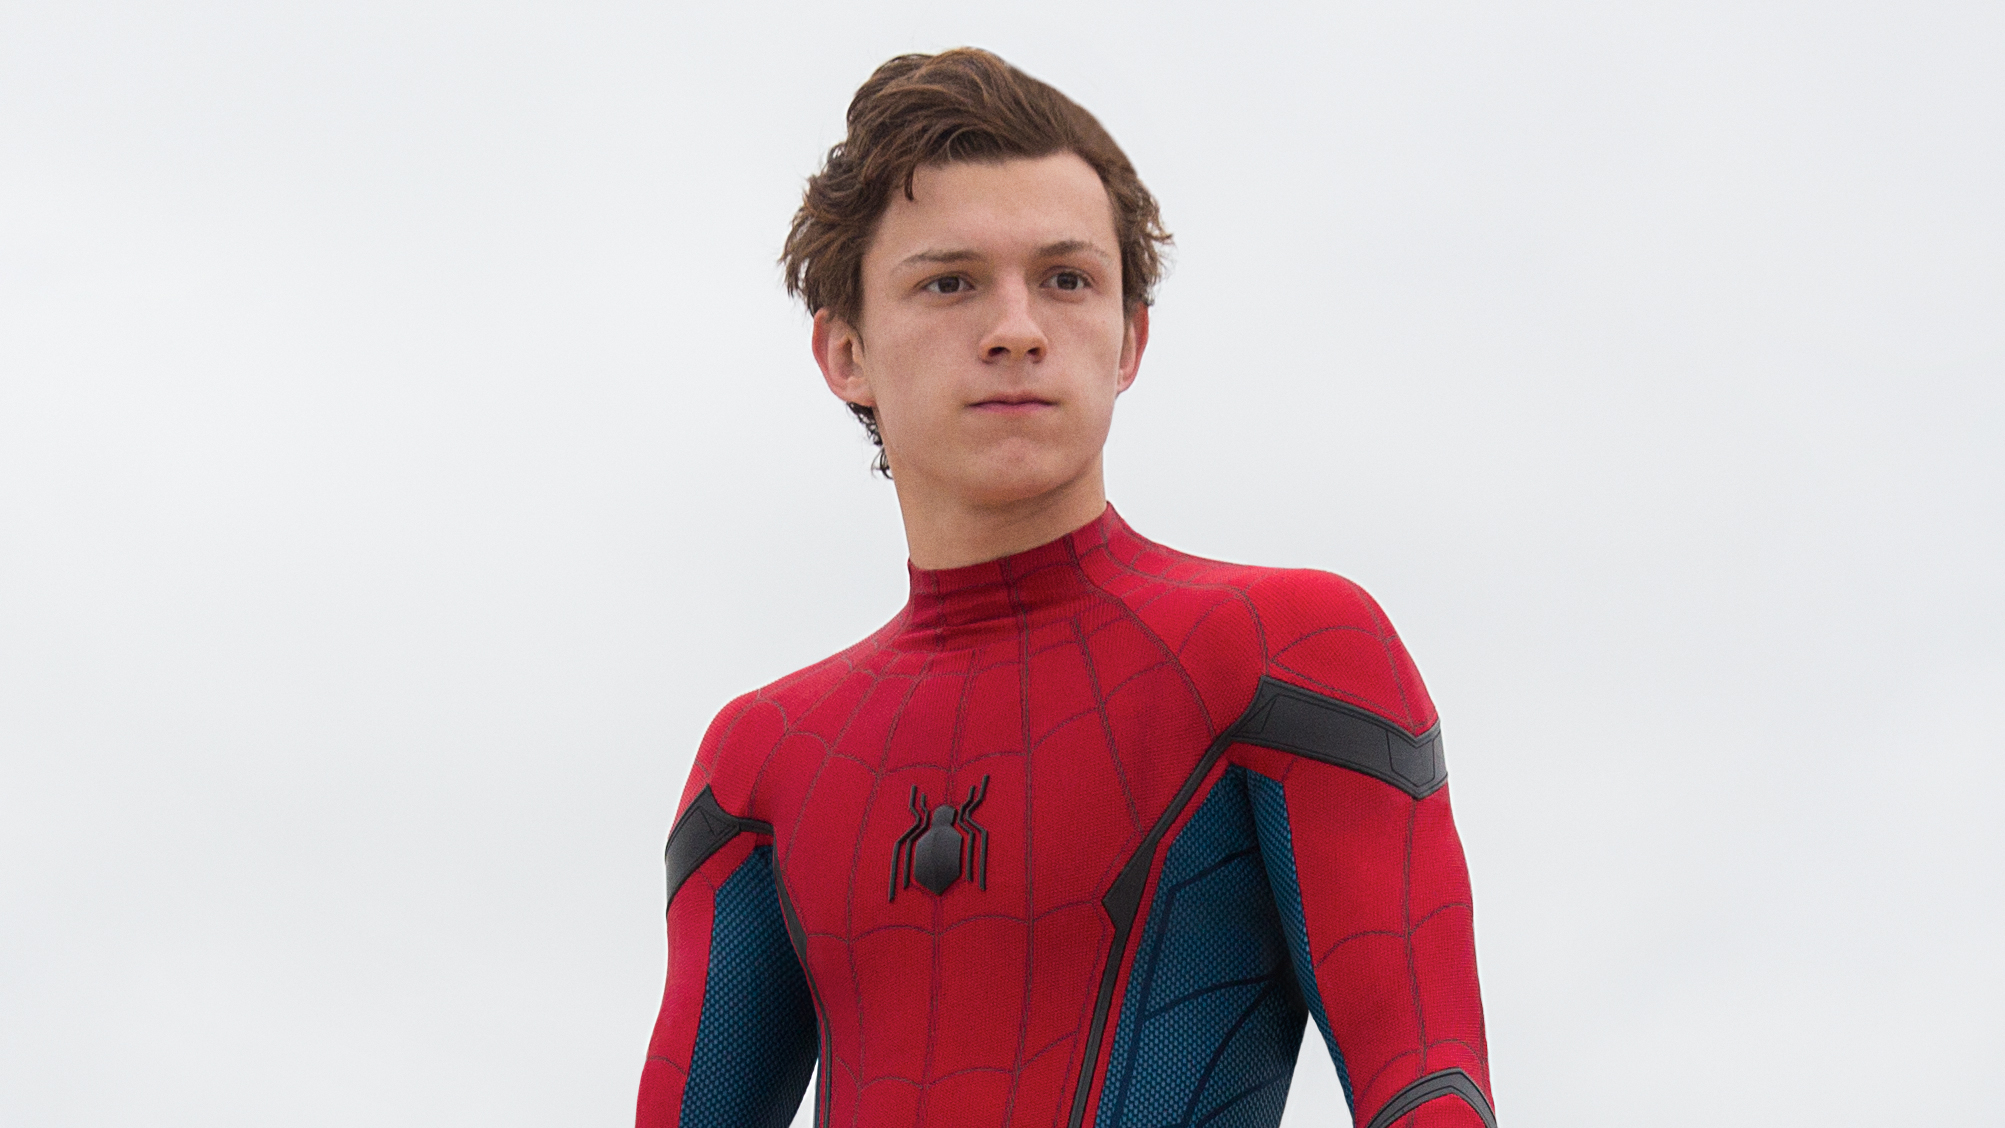 Siêu anh hùng Spider Man: Siêu anh hùng Spider Man - nhân vật yêu thích của mọi thế hệ, đã trở lại với phiên bản mới cực kỳ hấp dẫn. Chiêm ngưỡng những pha hành động hoành tráng, công nghệ đỉnh cao và kỹ năng đánh đấm siêu phàm của Spider Man. Hãy chào đón anh hùng của Marvel trên màn ảnh nhỏ của bạn.